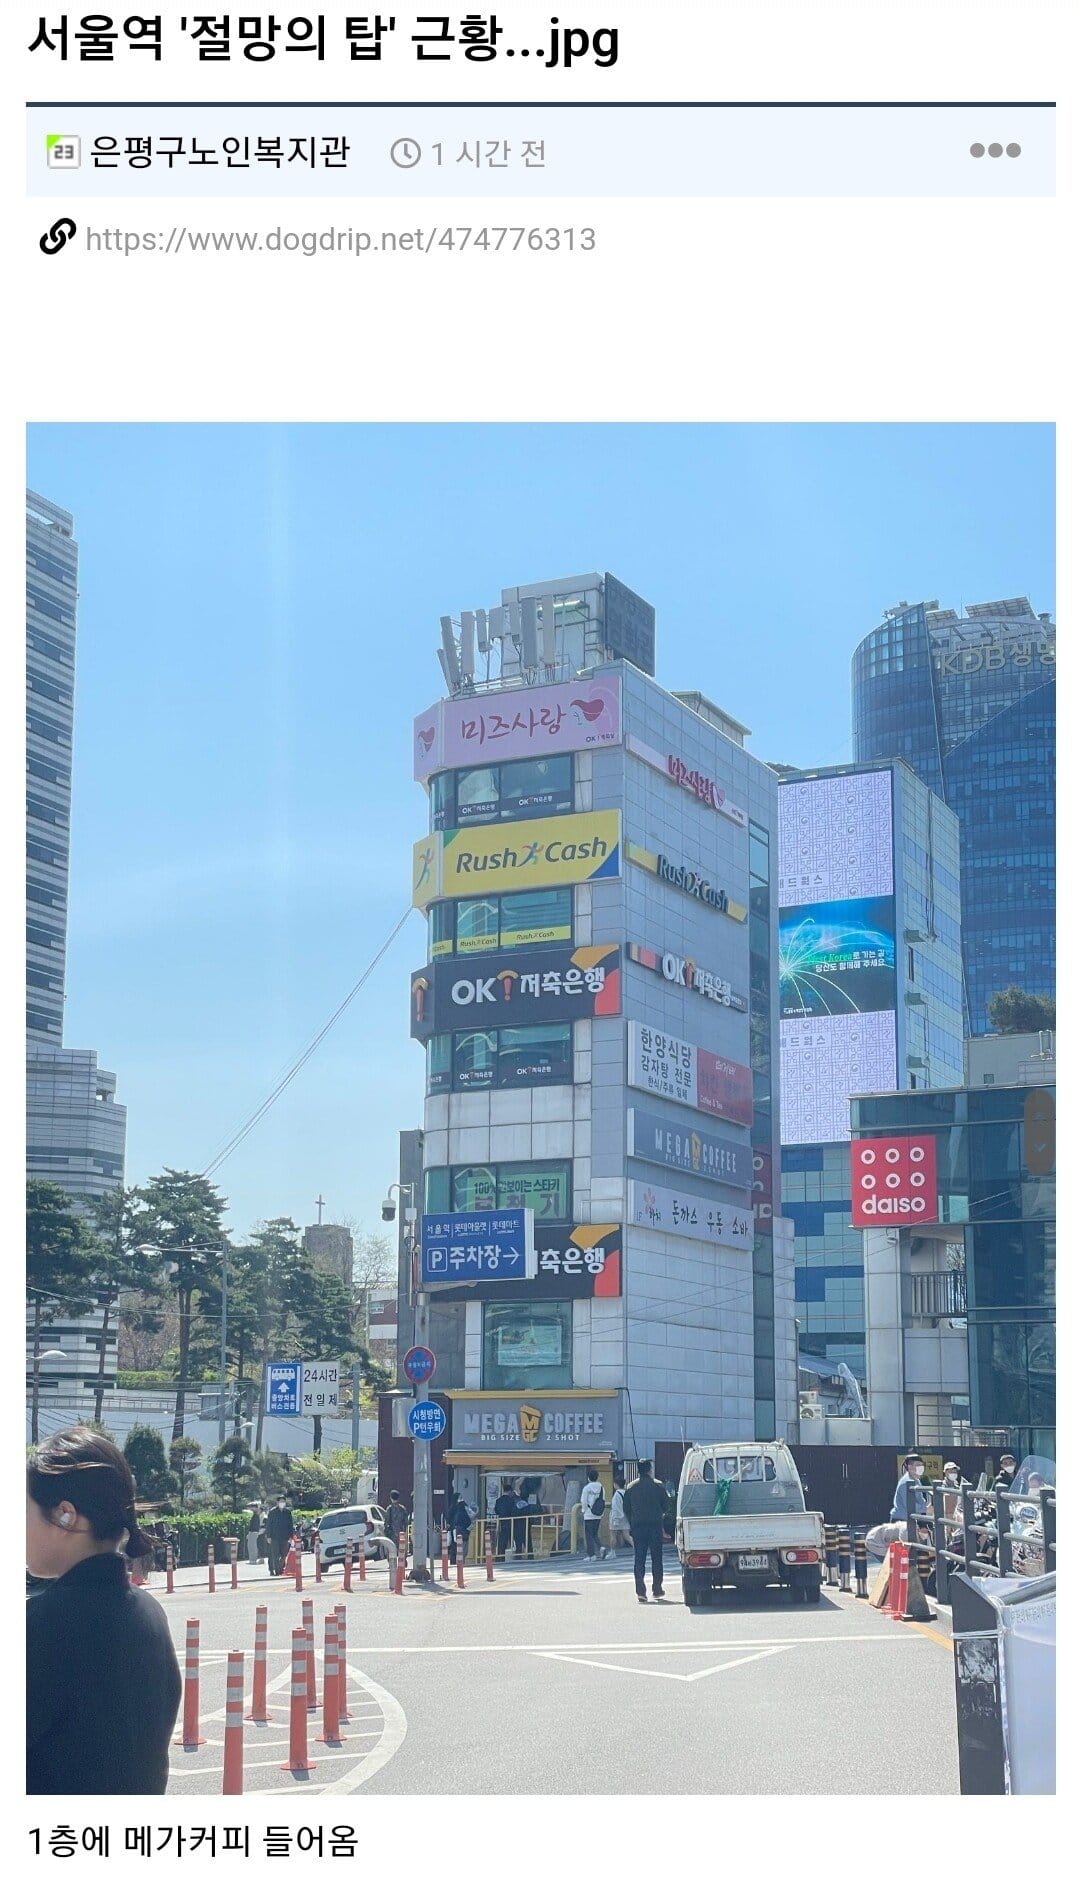 7 서울역 절망의 탑.jpg